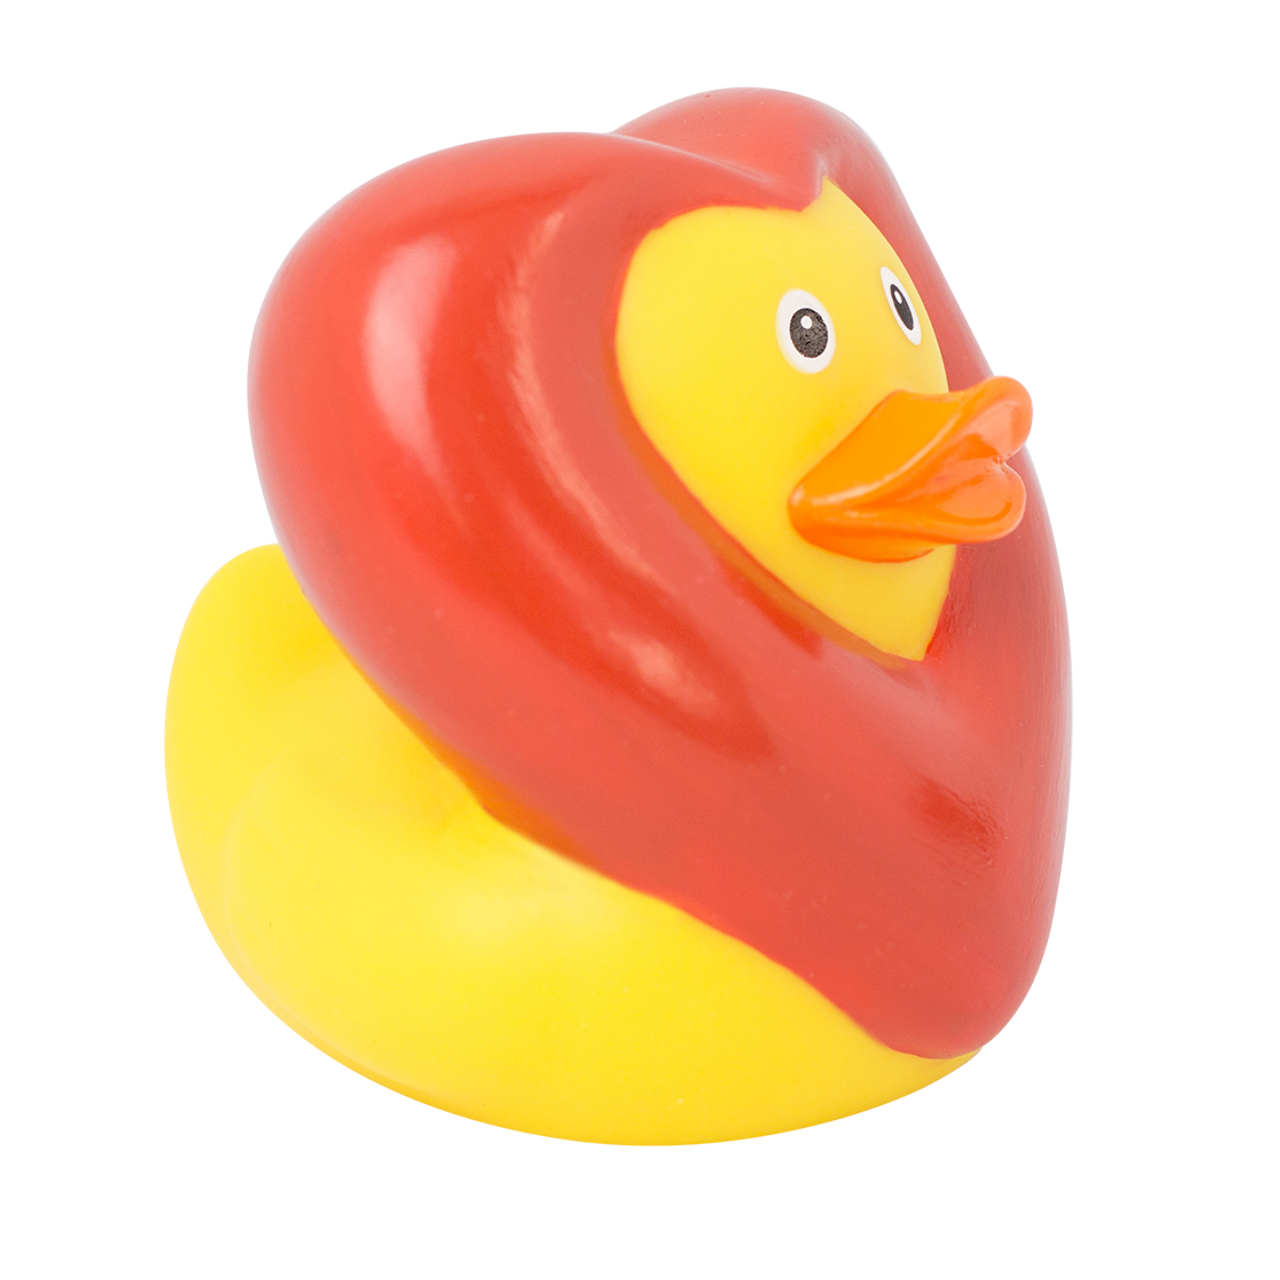 Mini Pop Hearts Rubber Duck